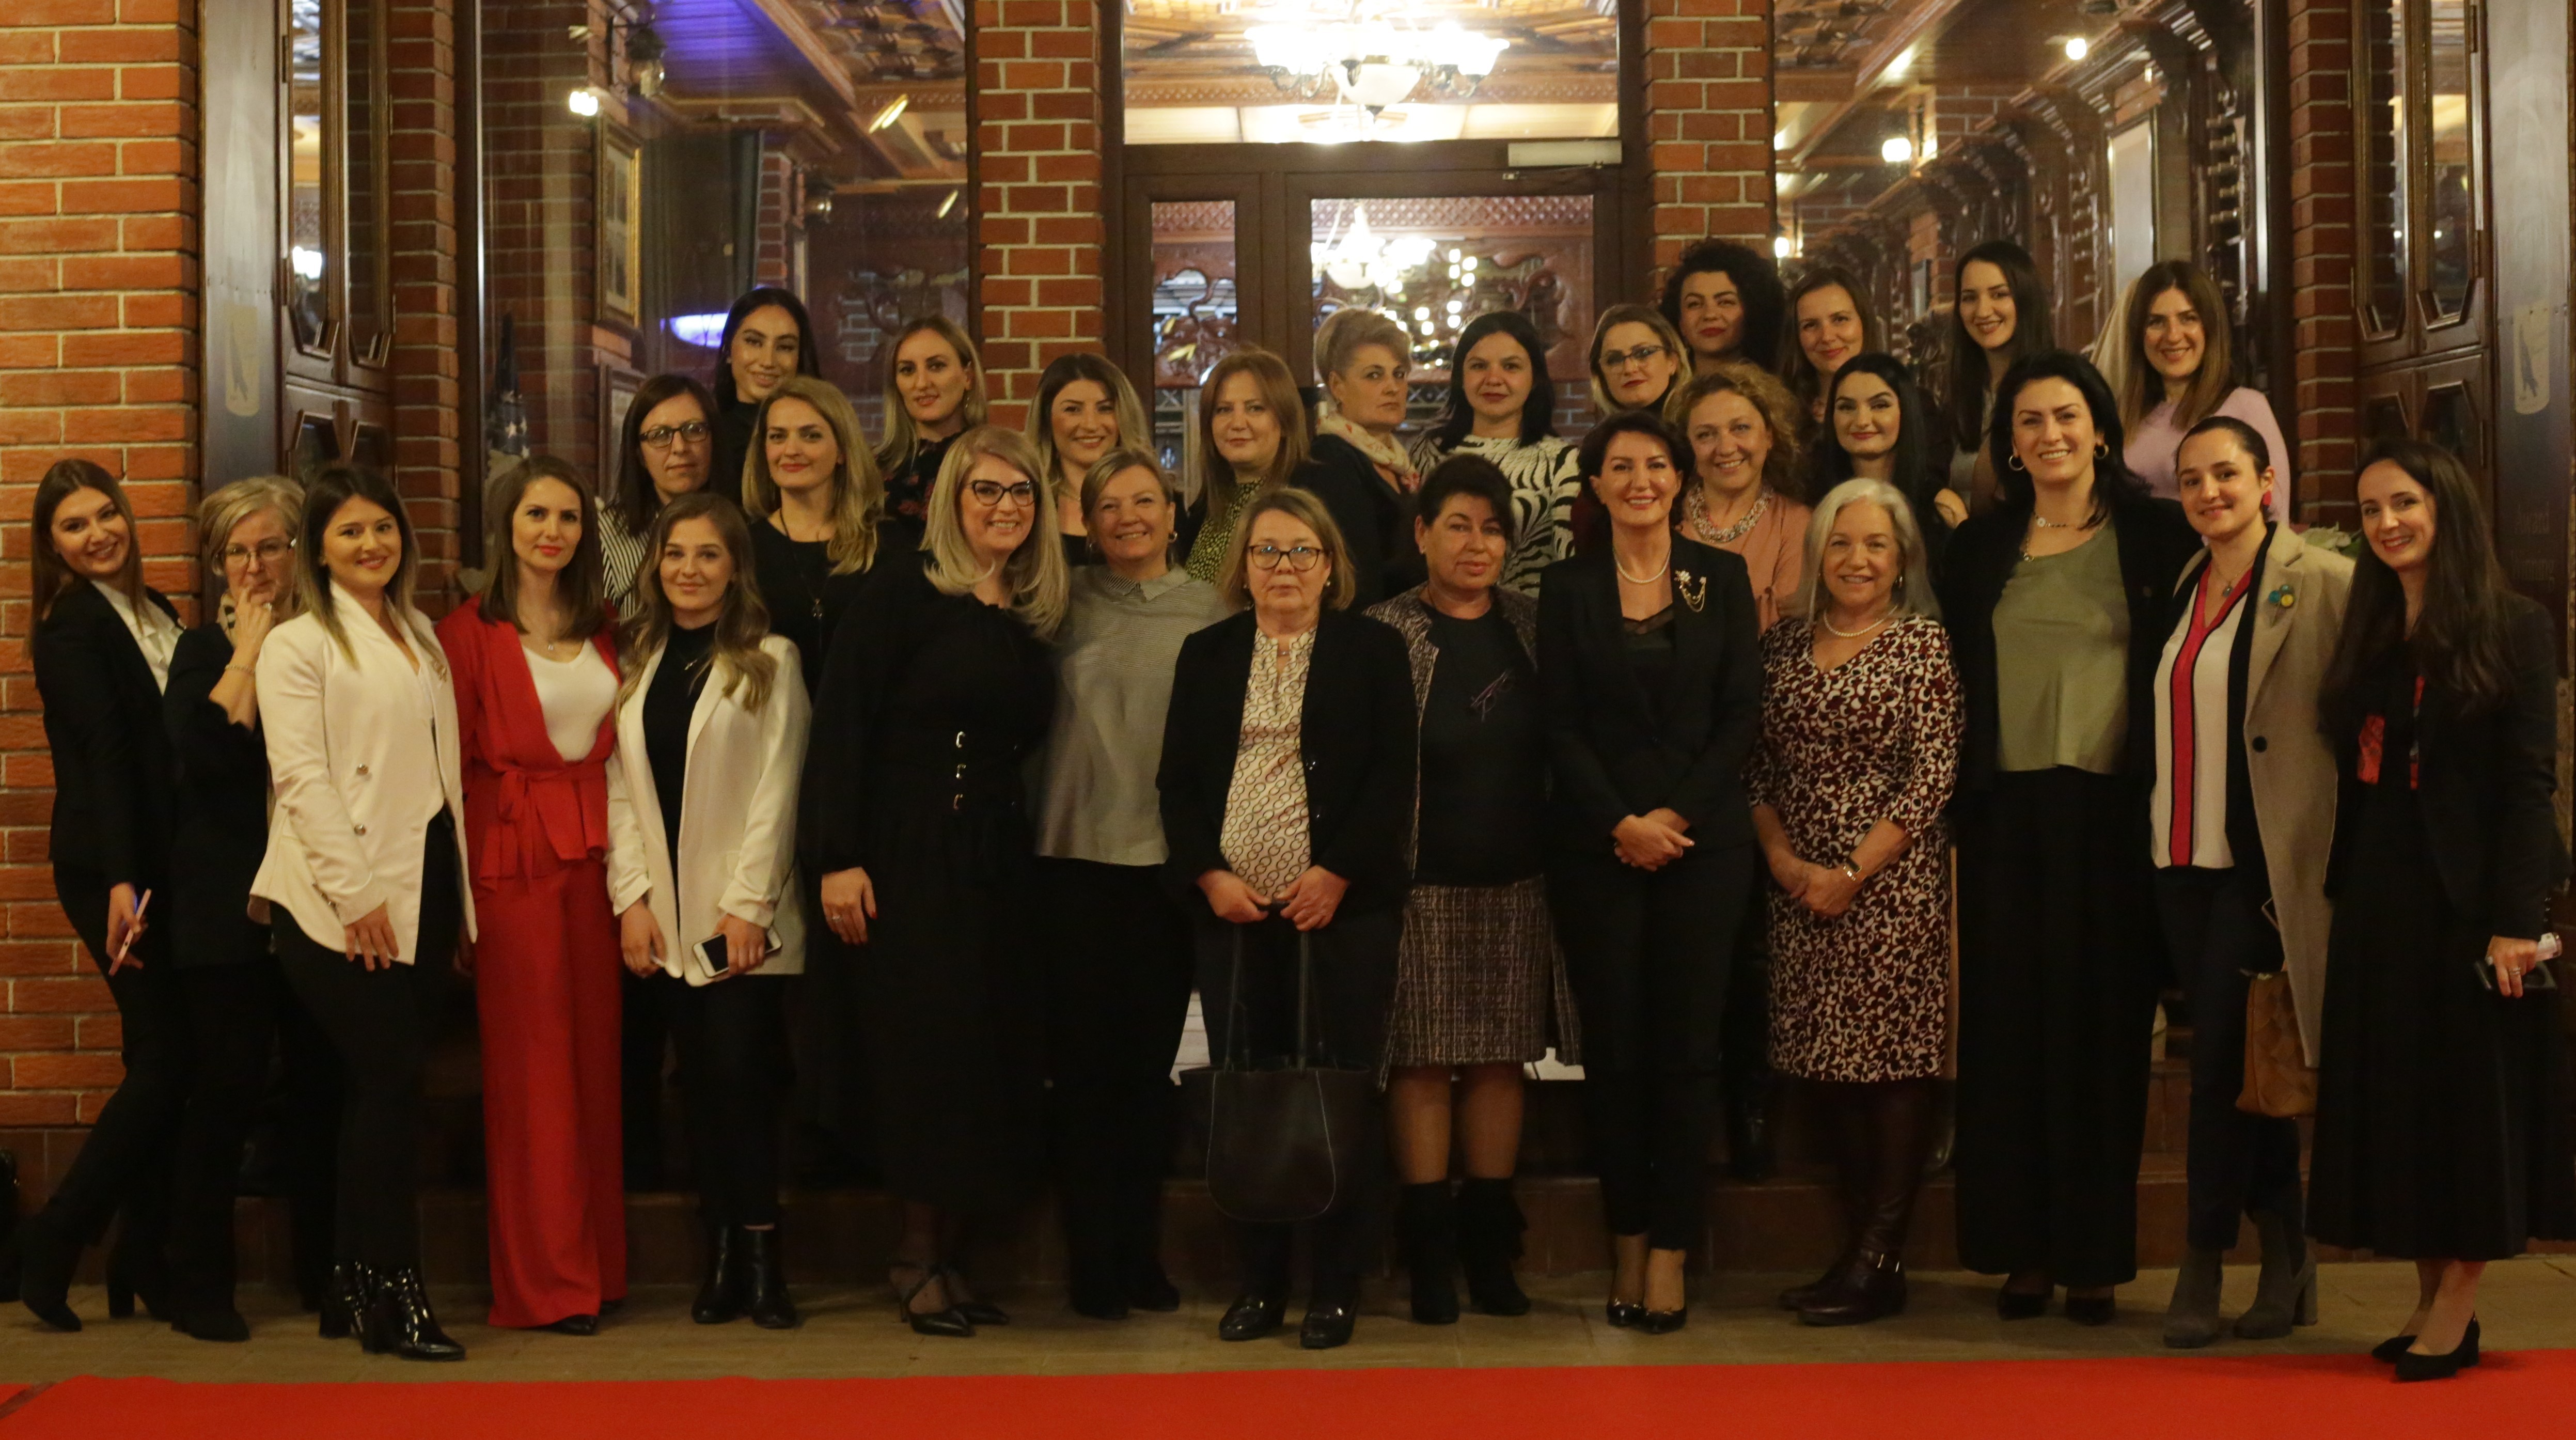 Gratë nga misione të ndryshme diplomatike mblidhen përreth gotës së verës